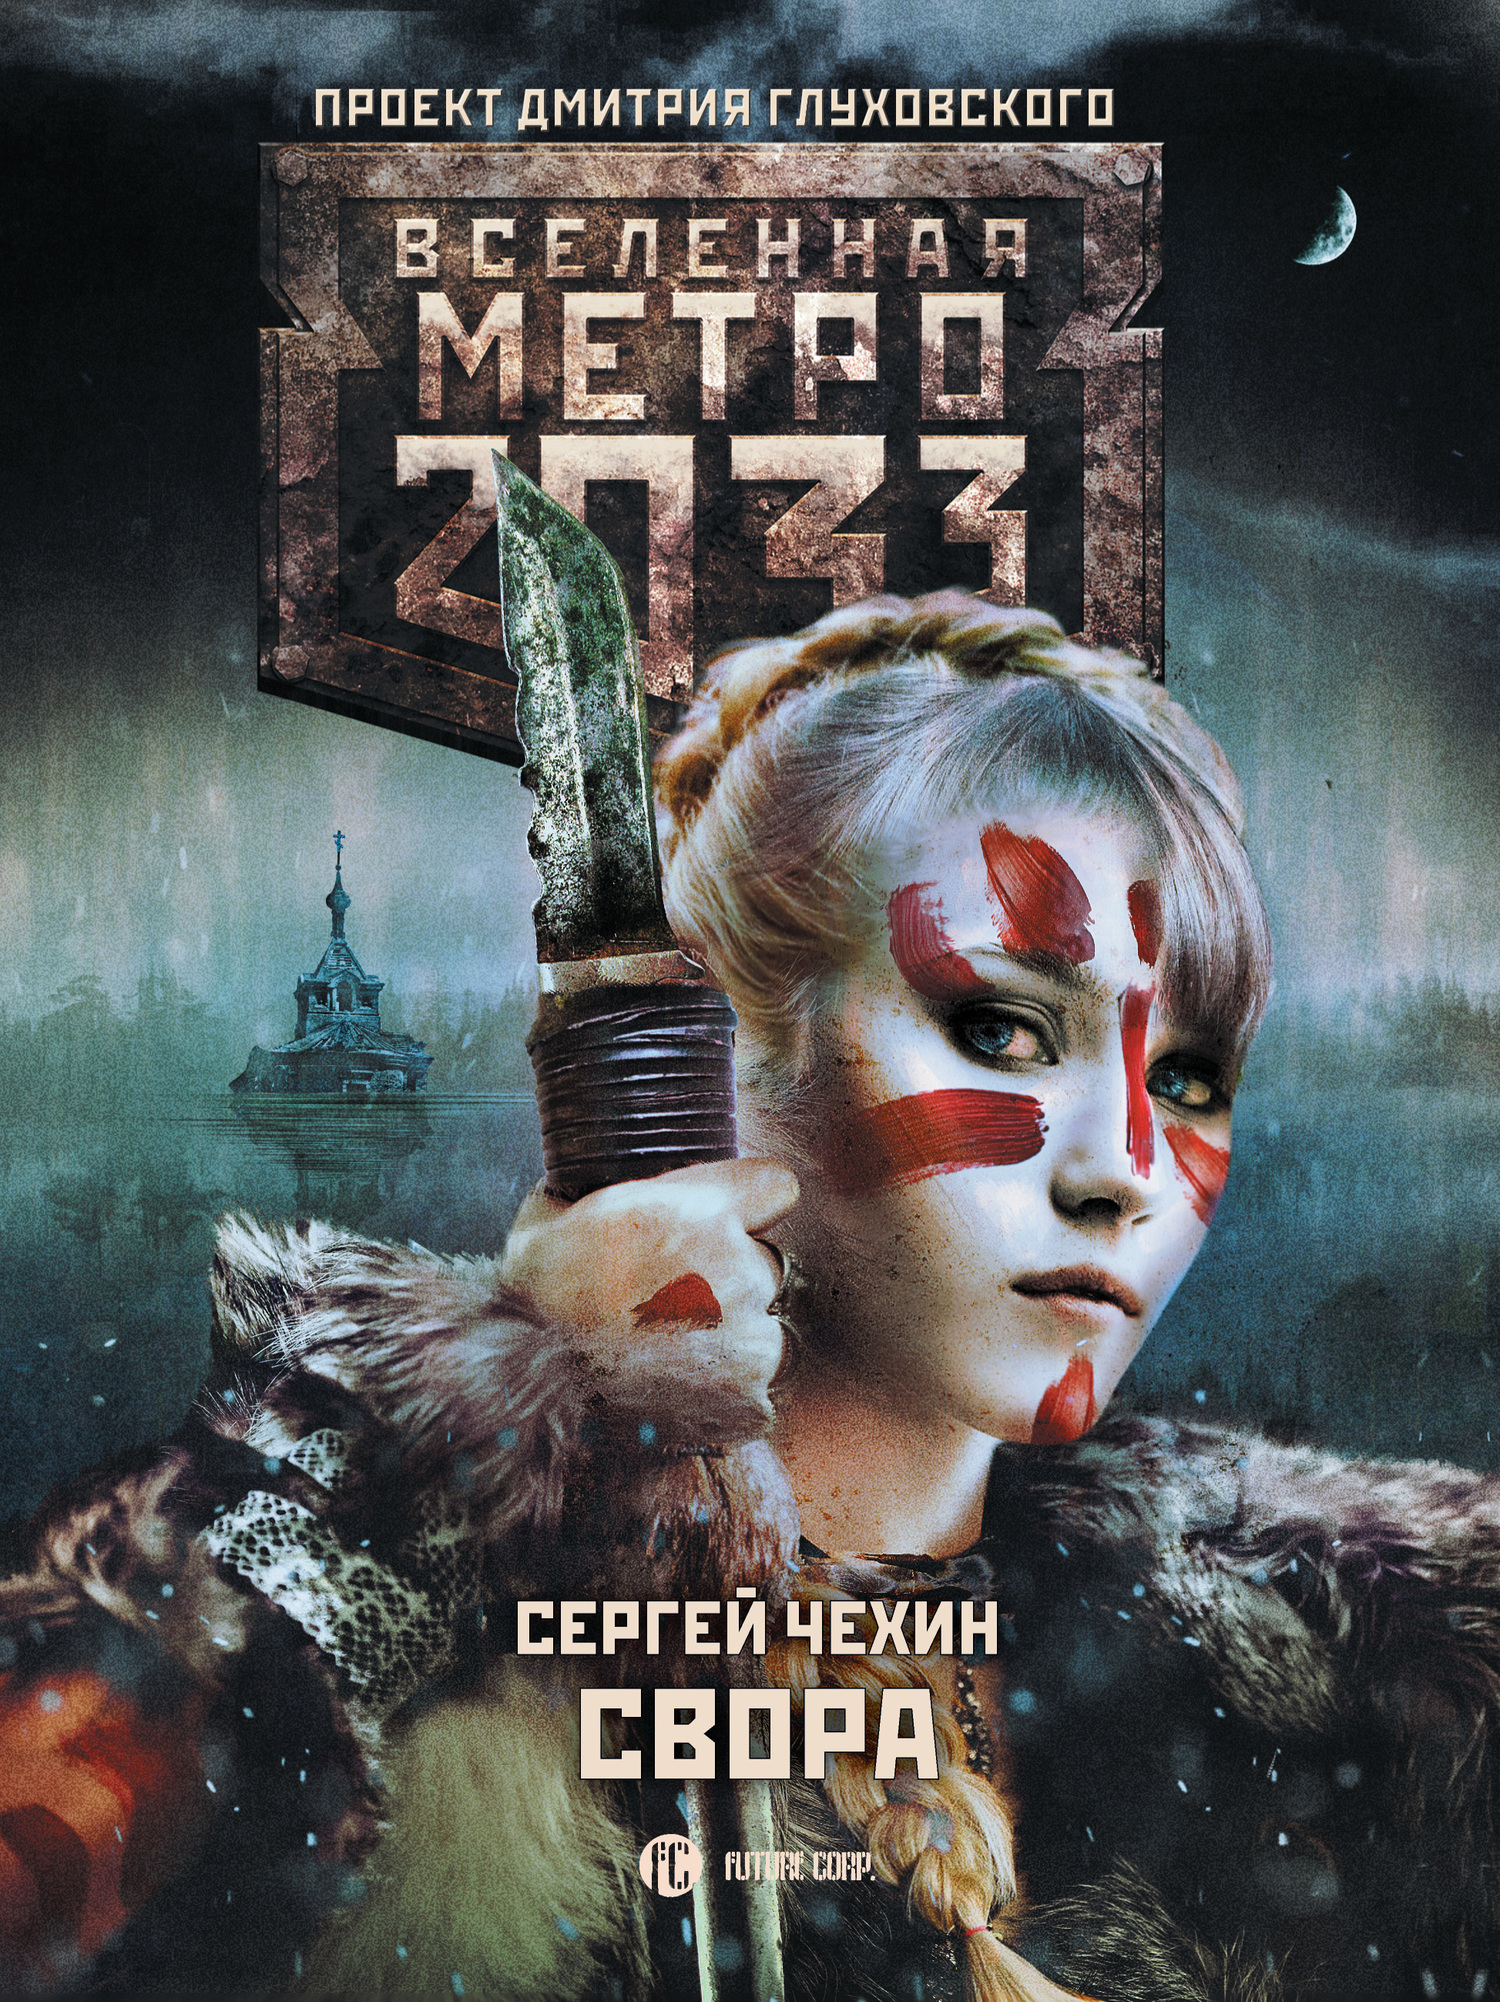 Чехин Сергей - Метро 2033: Свора скачать бесплатно